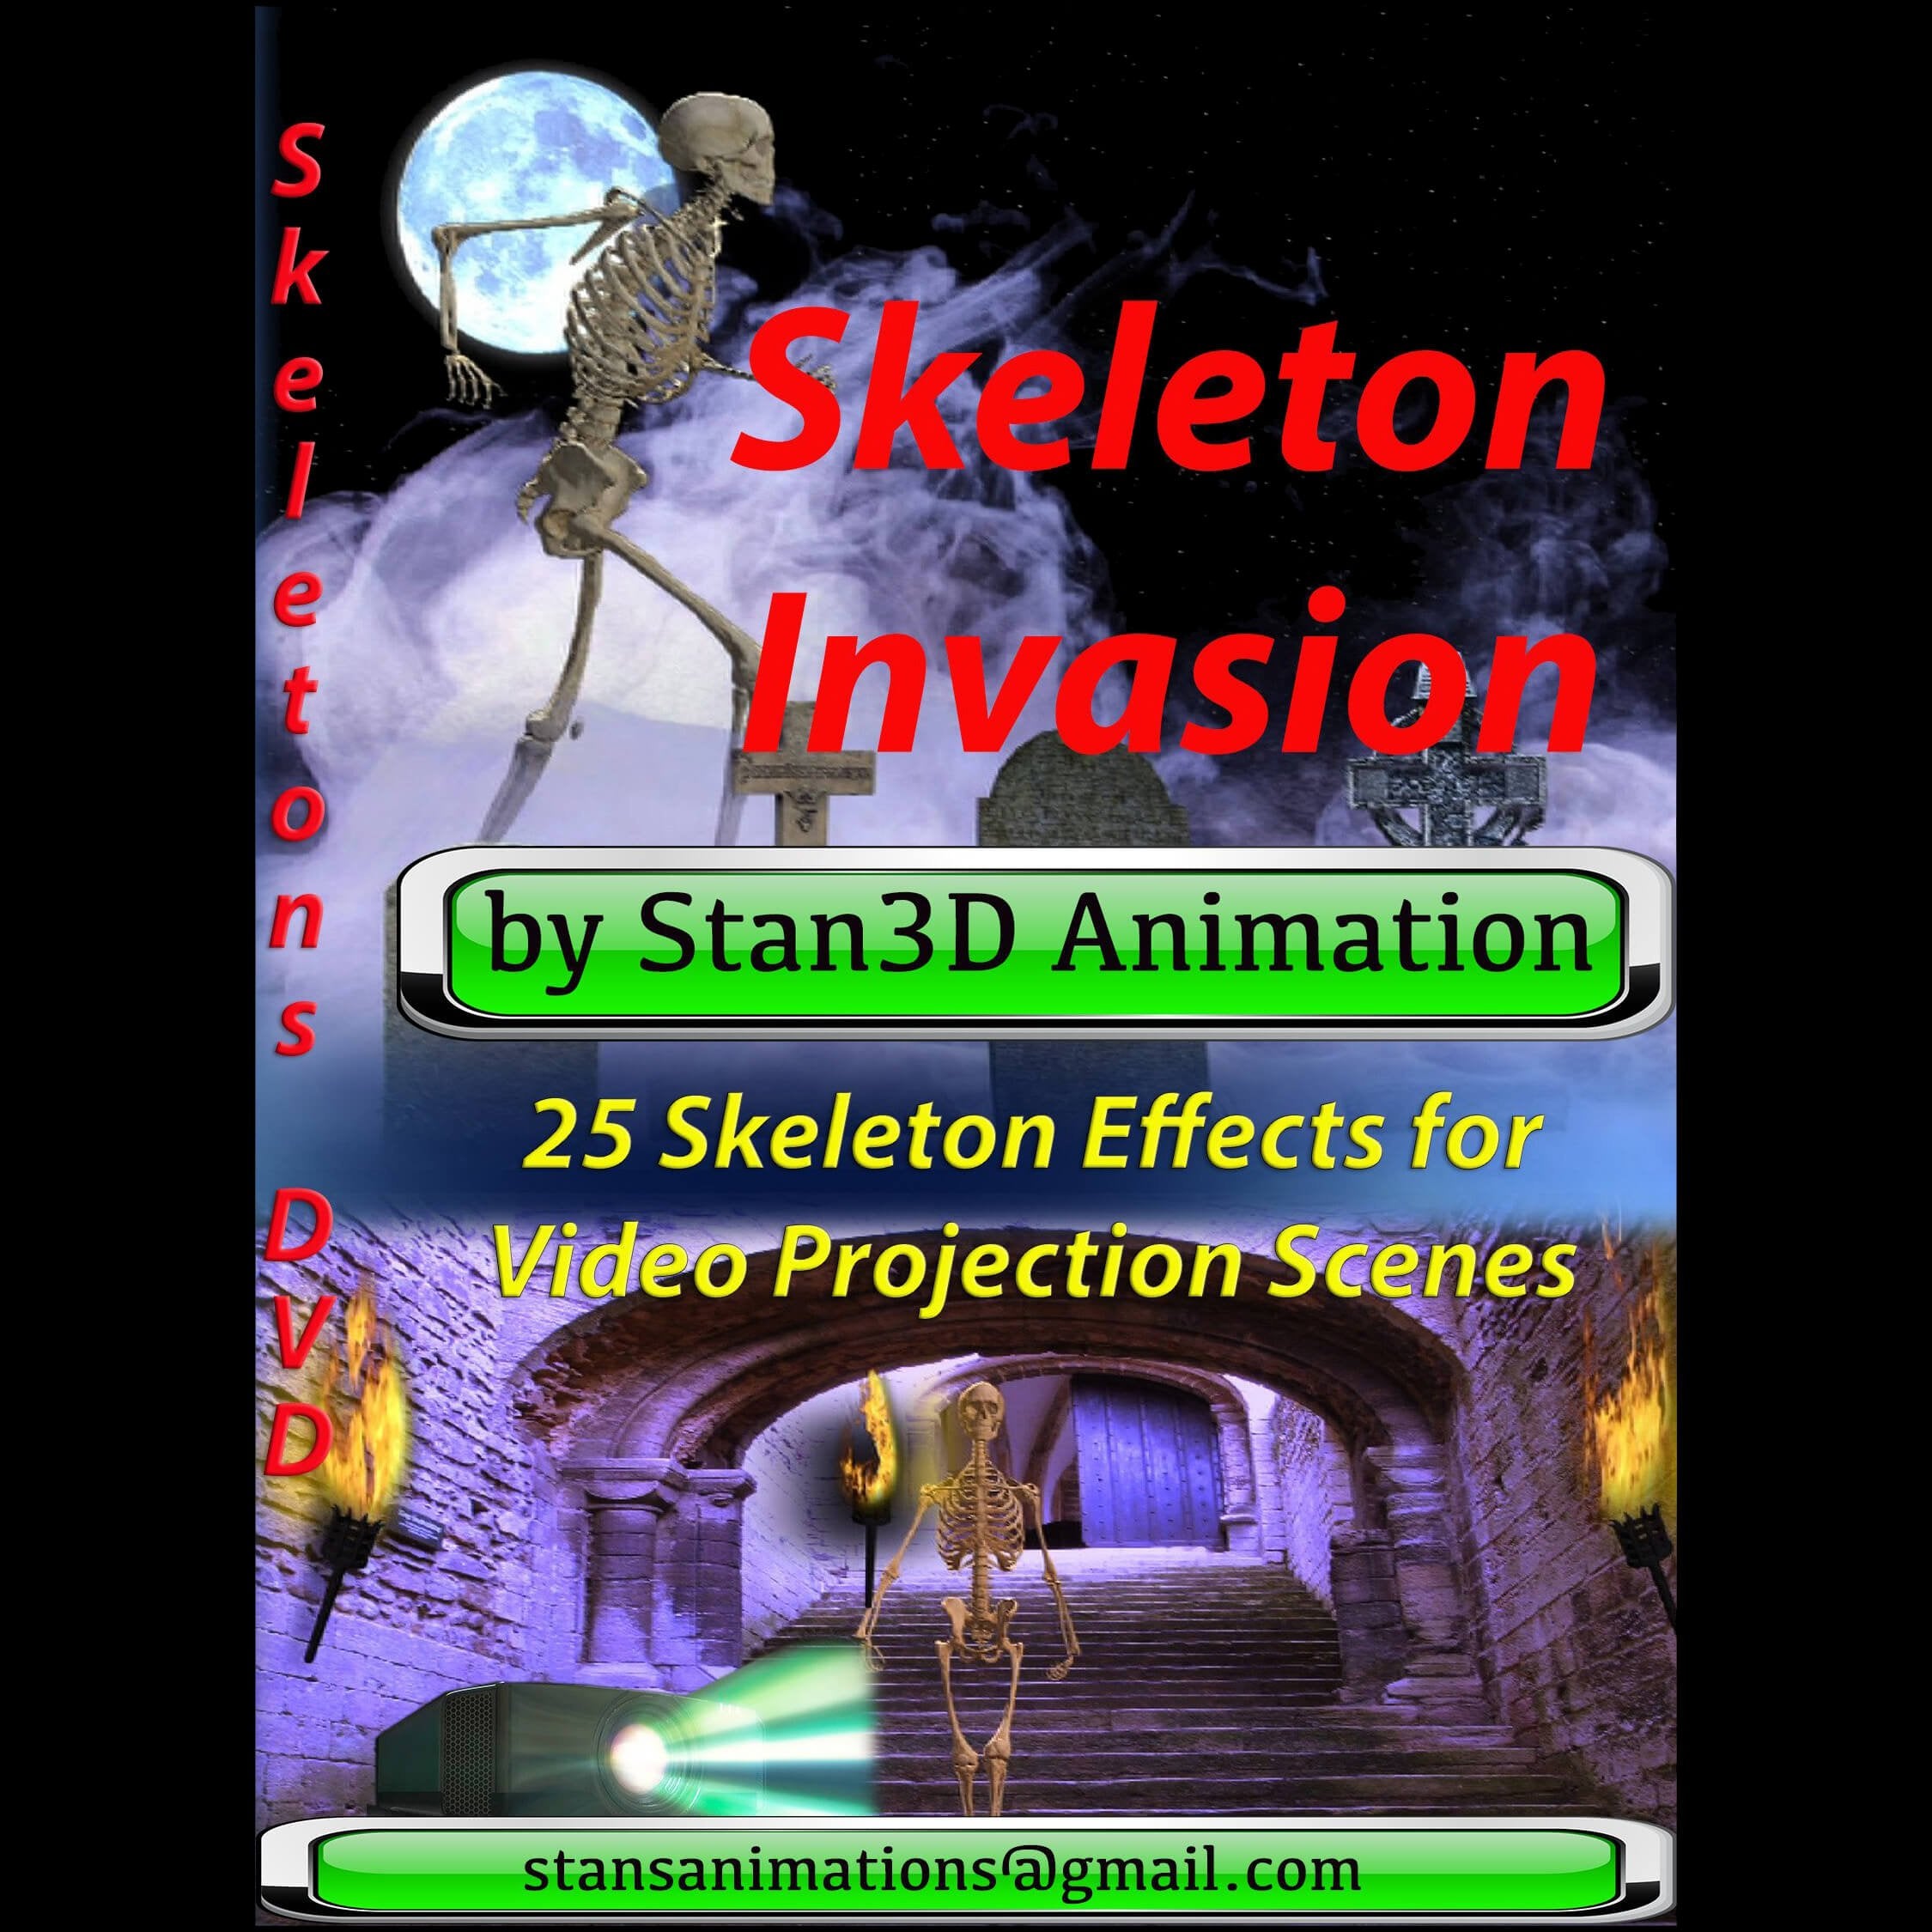 Skeleton Invasion DVD w/ Digital Files Coupon